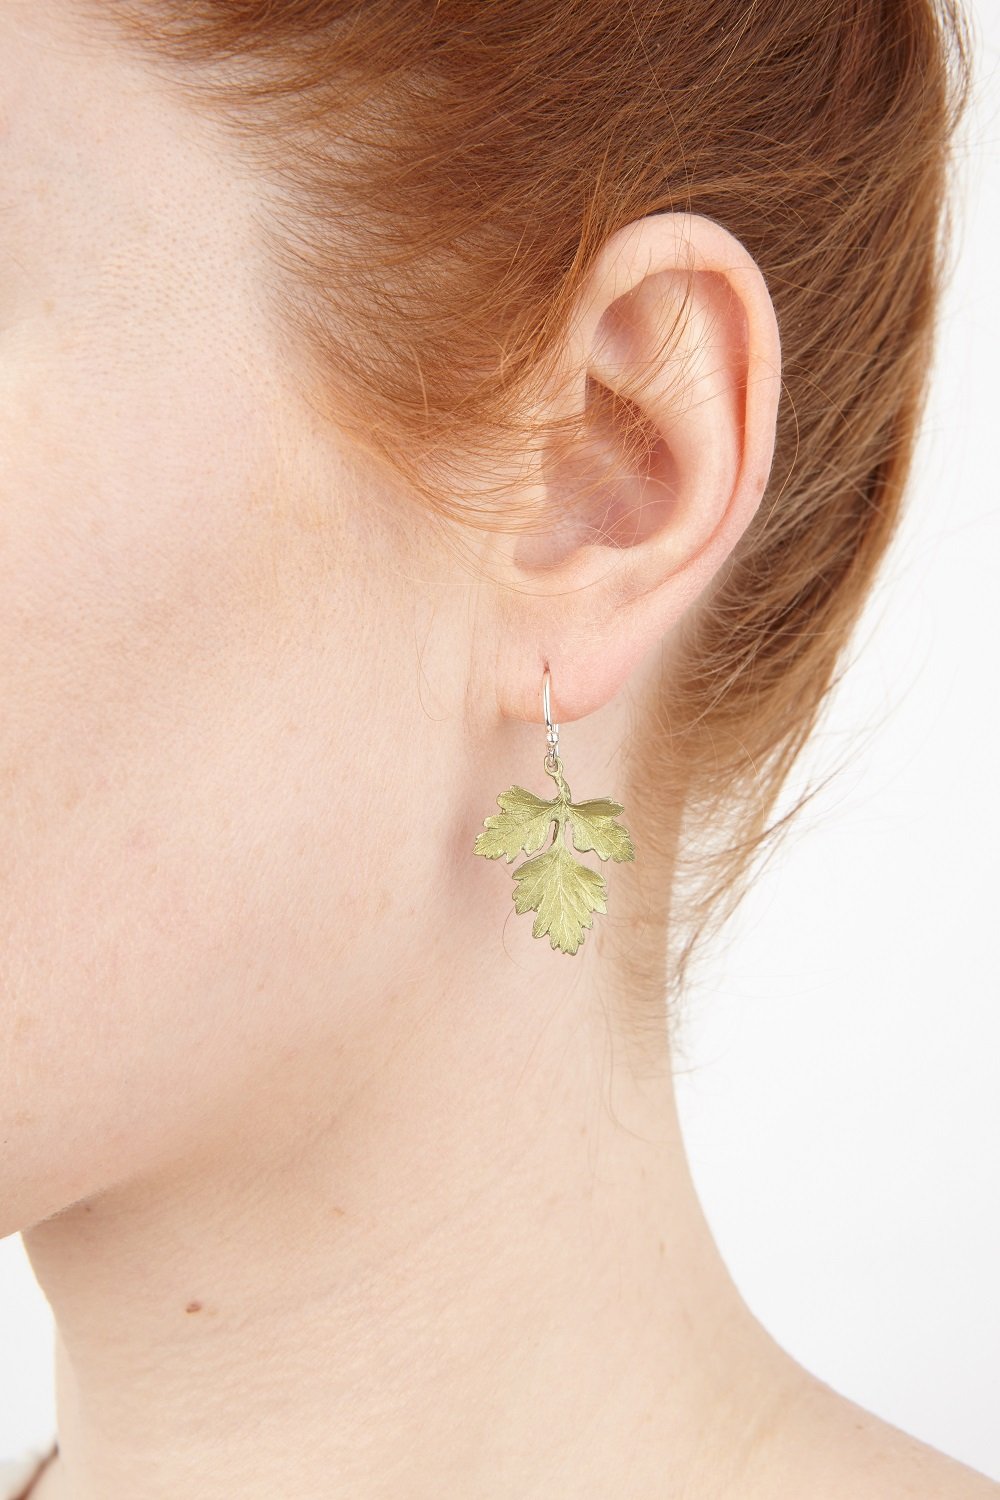 Petite Herb - Parsley Wire Earrings